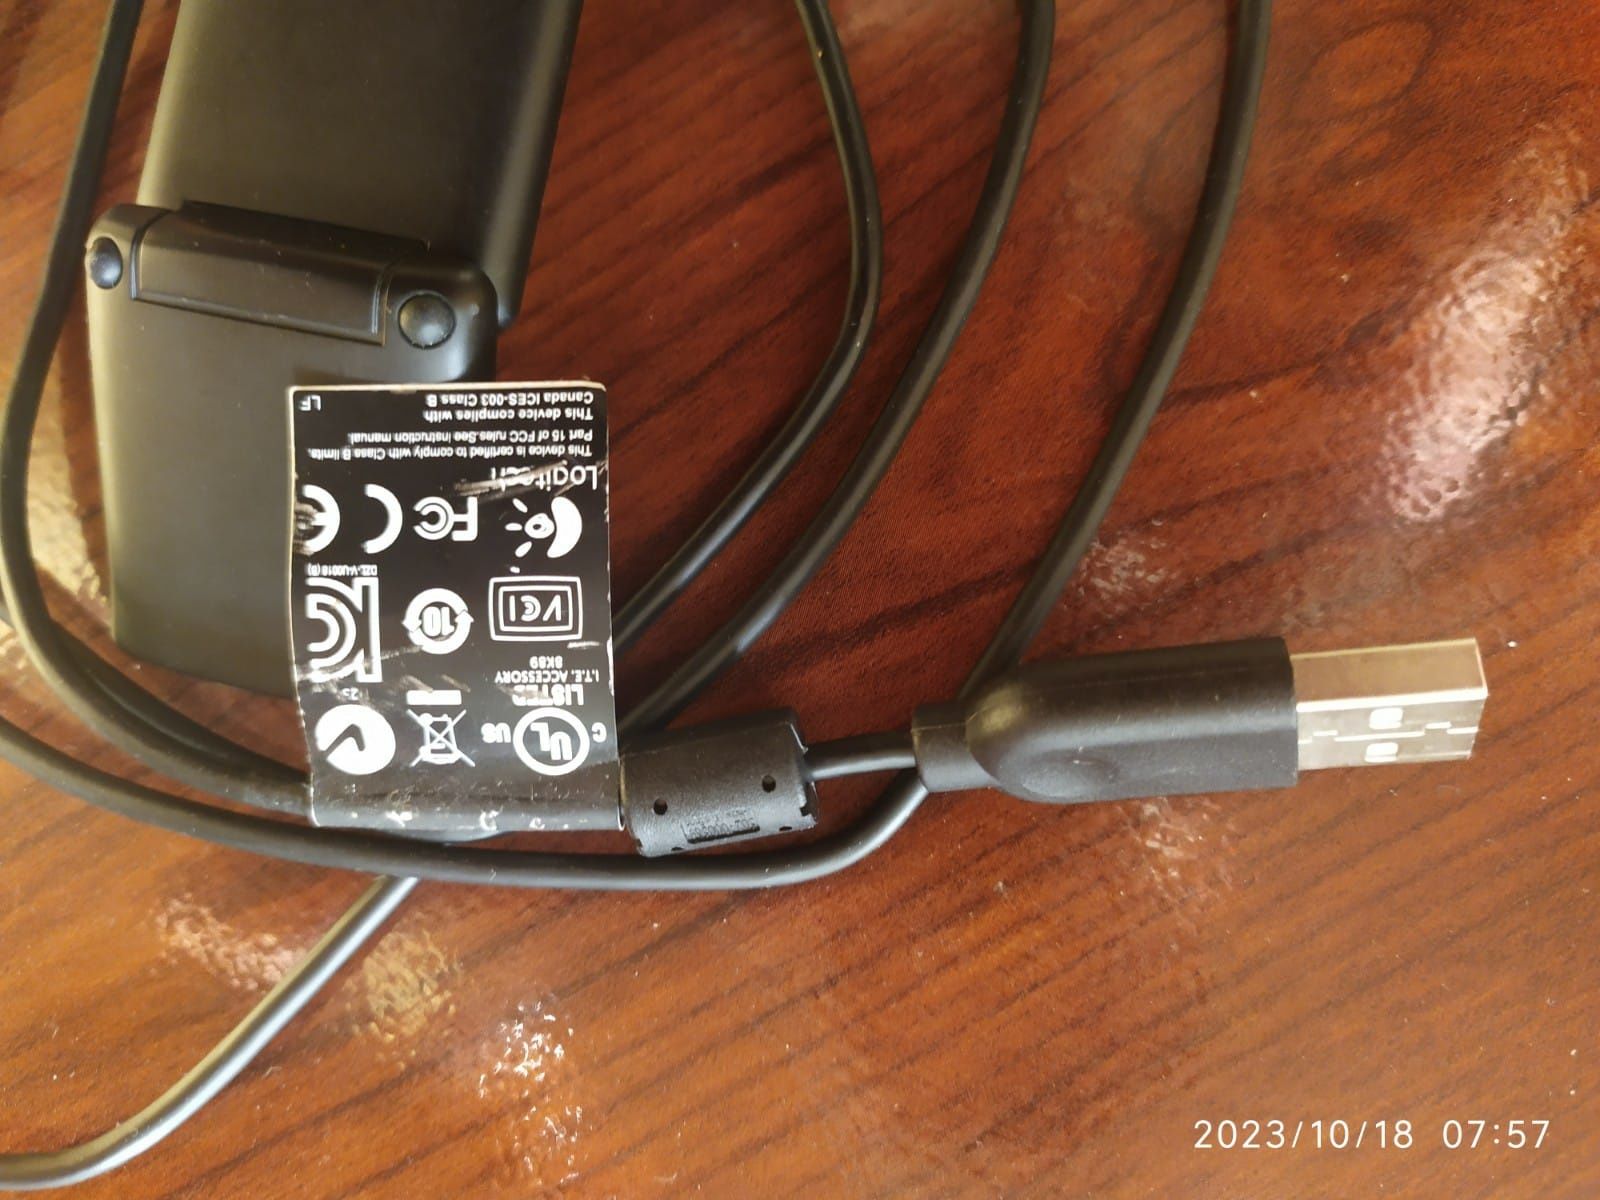 Веб-камера Logitech C270 HD USB 2.0 со встроенным микрофоном